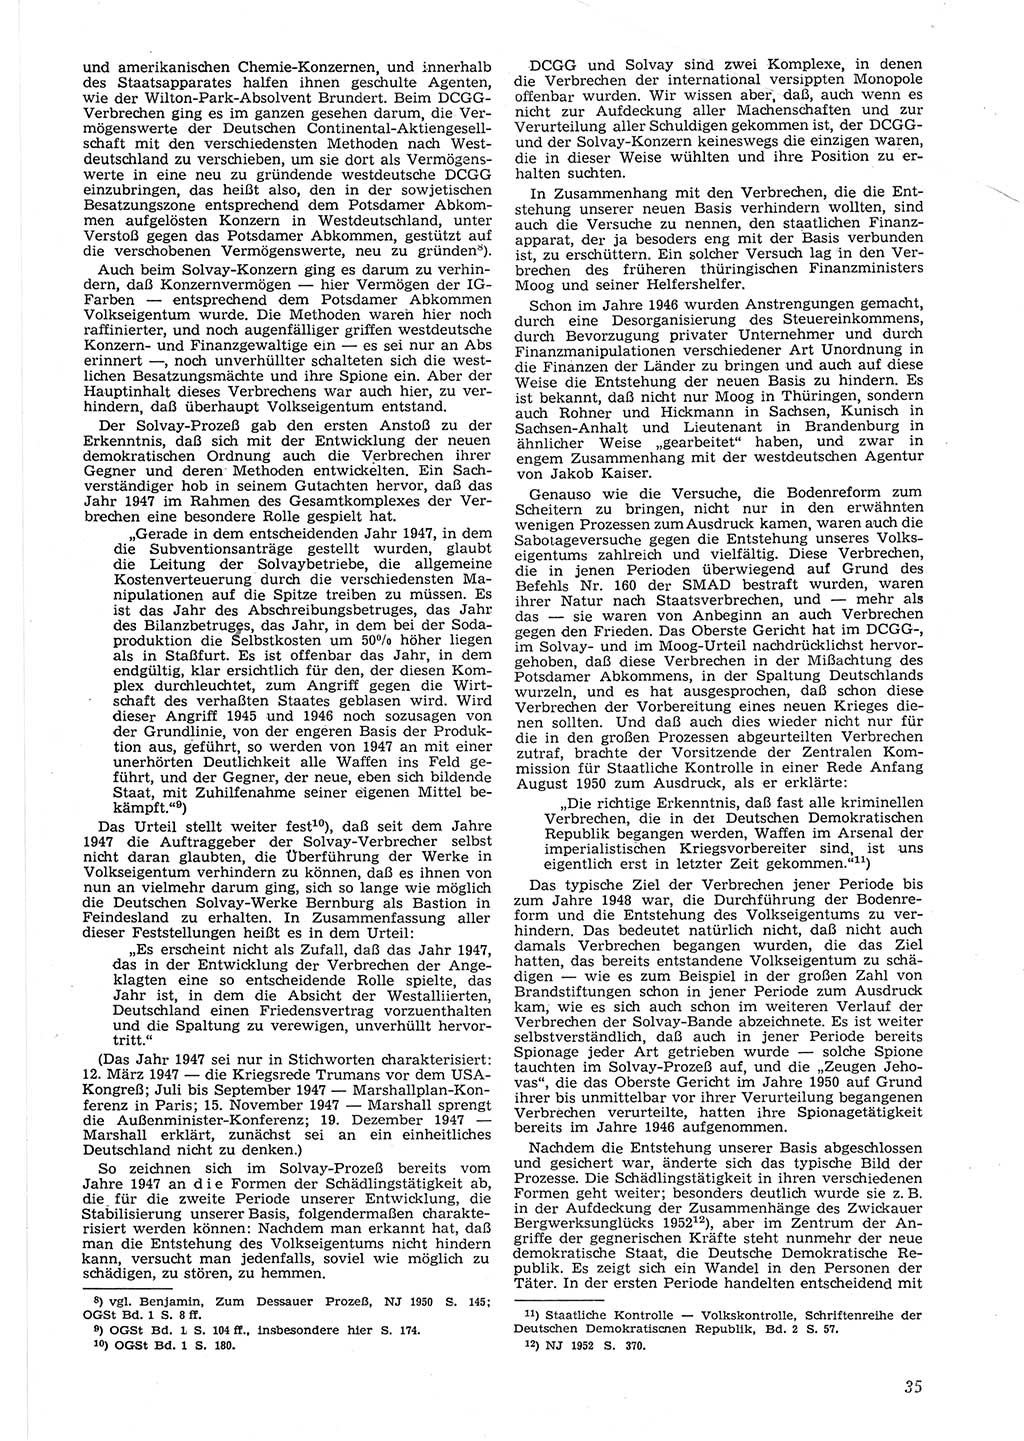 Neue Justiz (NJ), Zeitschrift für Recht und Rechtswissenschaft [Deutsche Demokratische Republik (DDR)], 8. Jahrgang 1954, Seite 35 (NJ DDR 1954, S. 35)